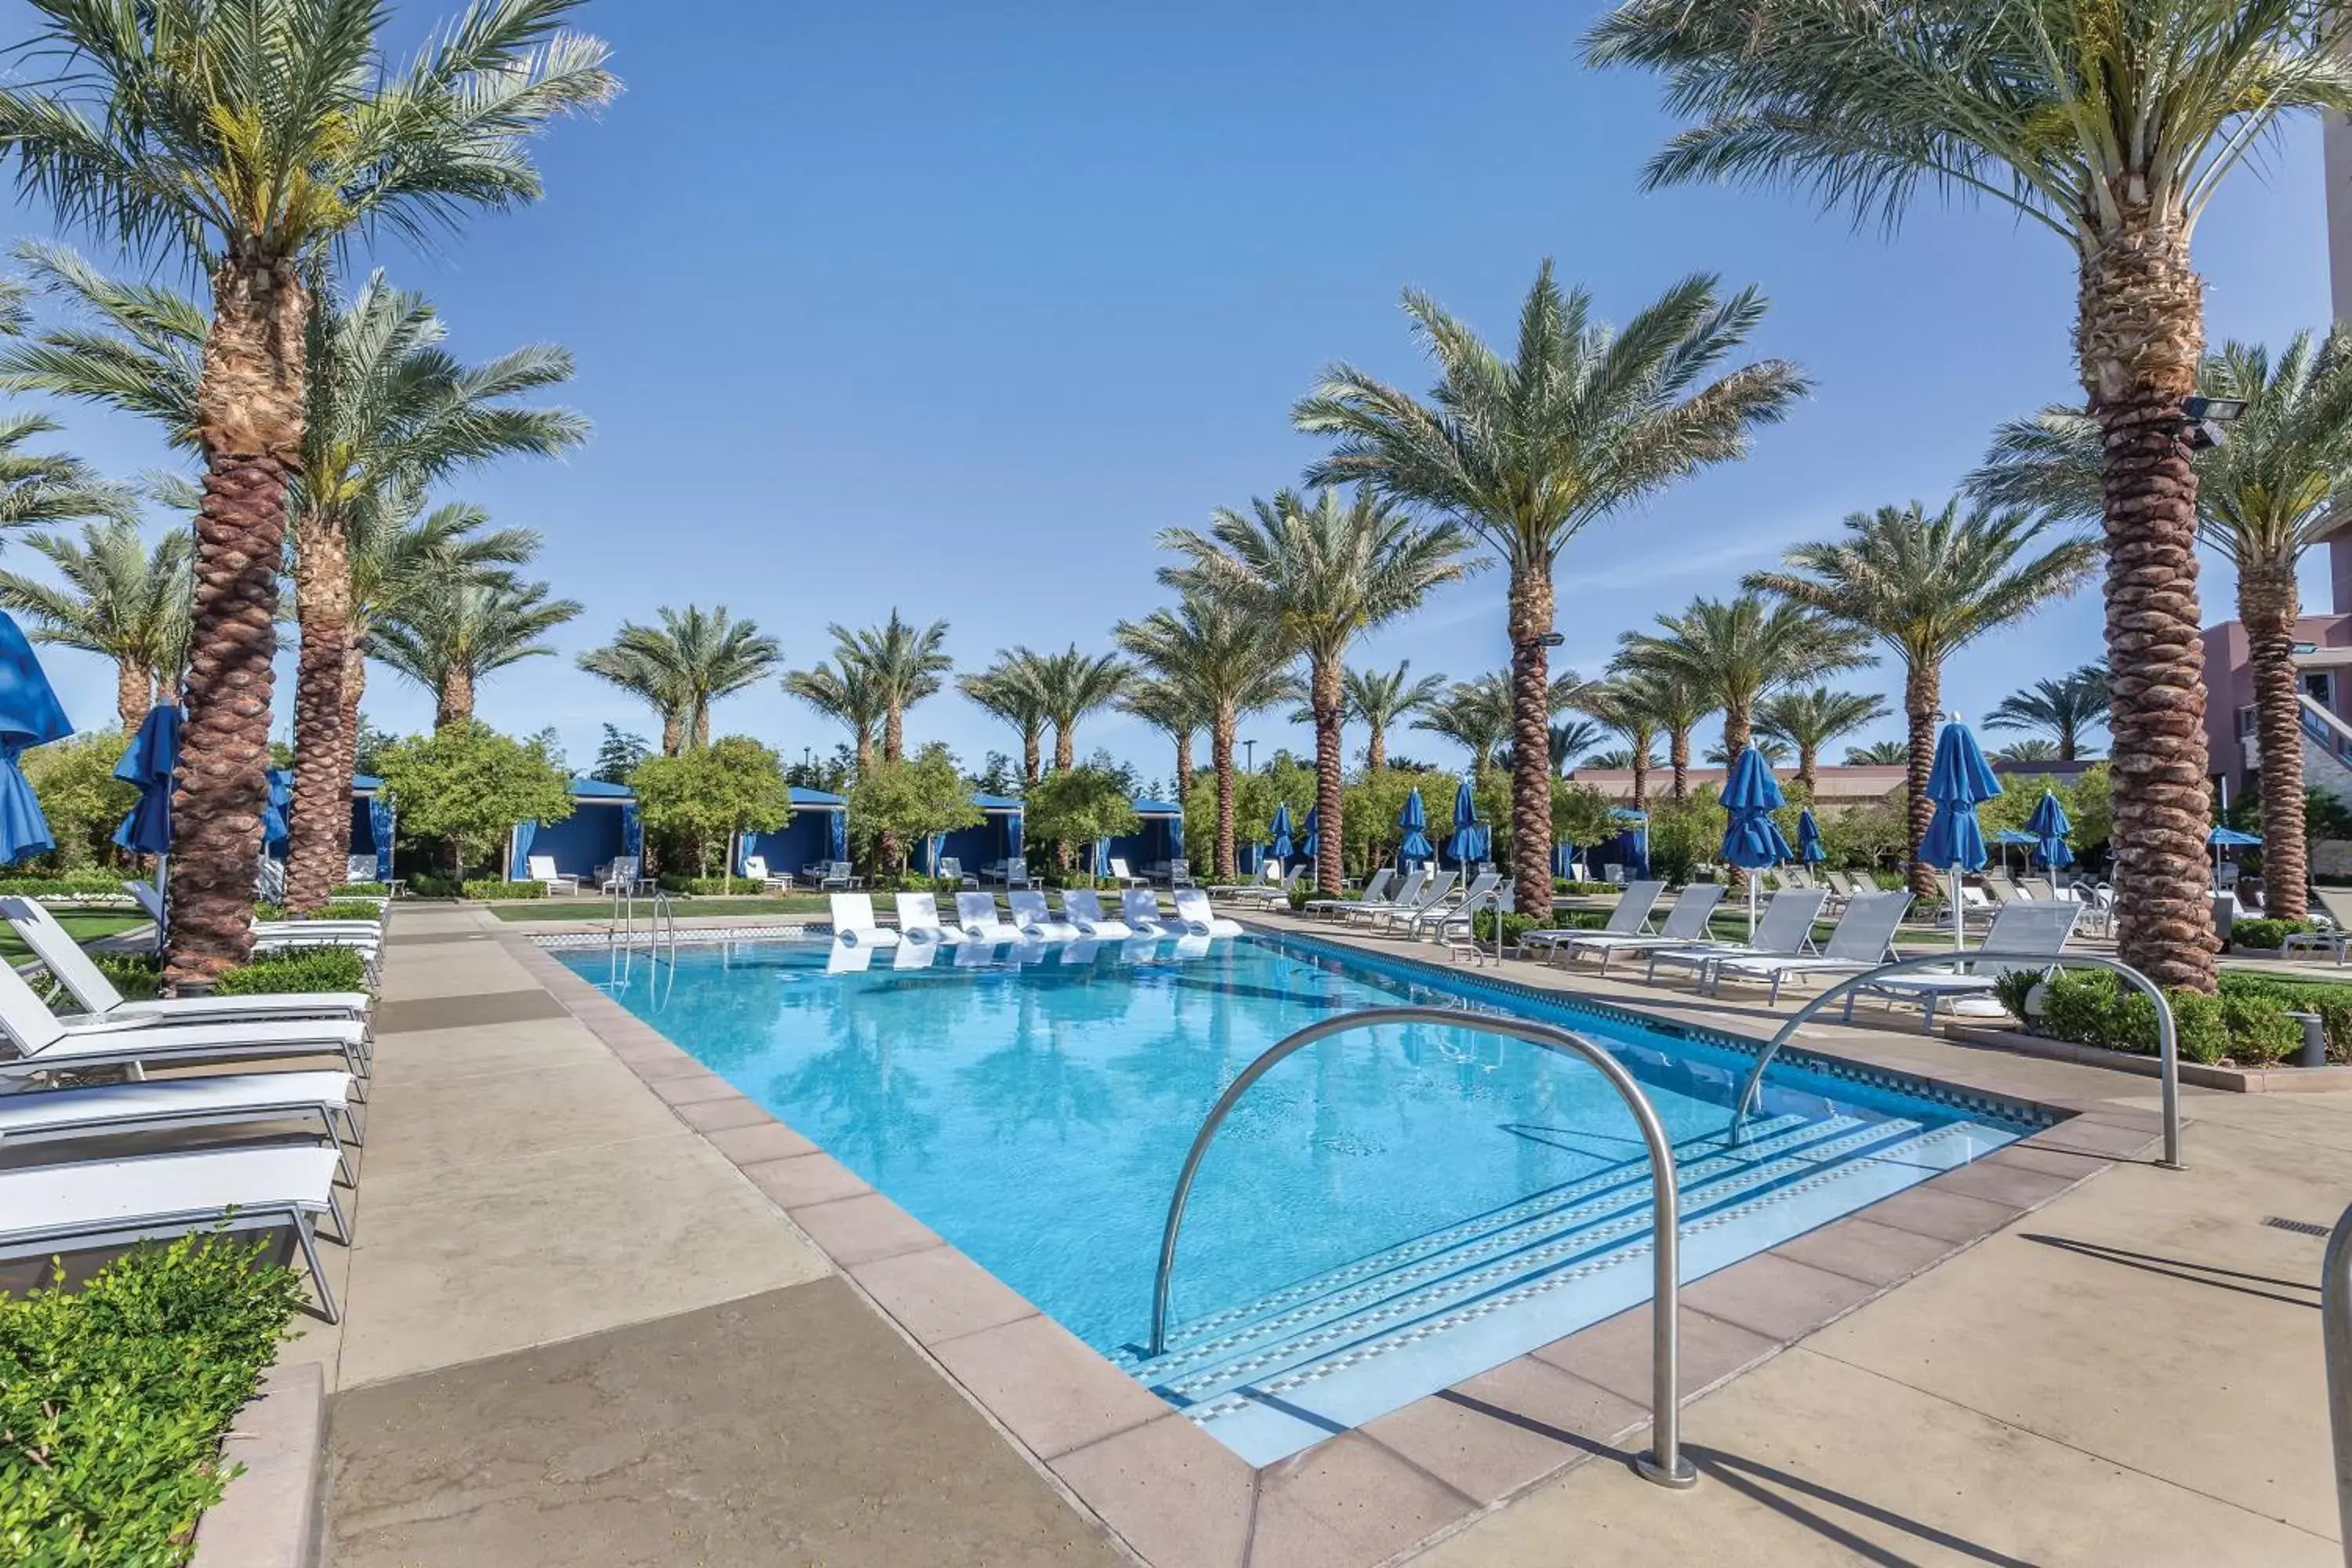 Swimming Pool in Club Wyndham Desert Blue